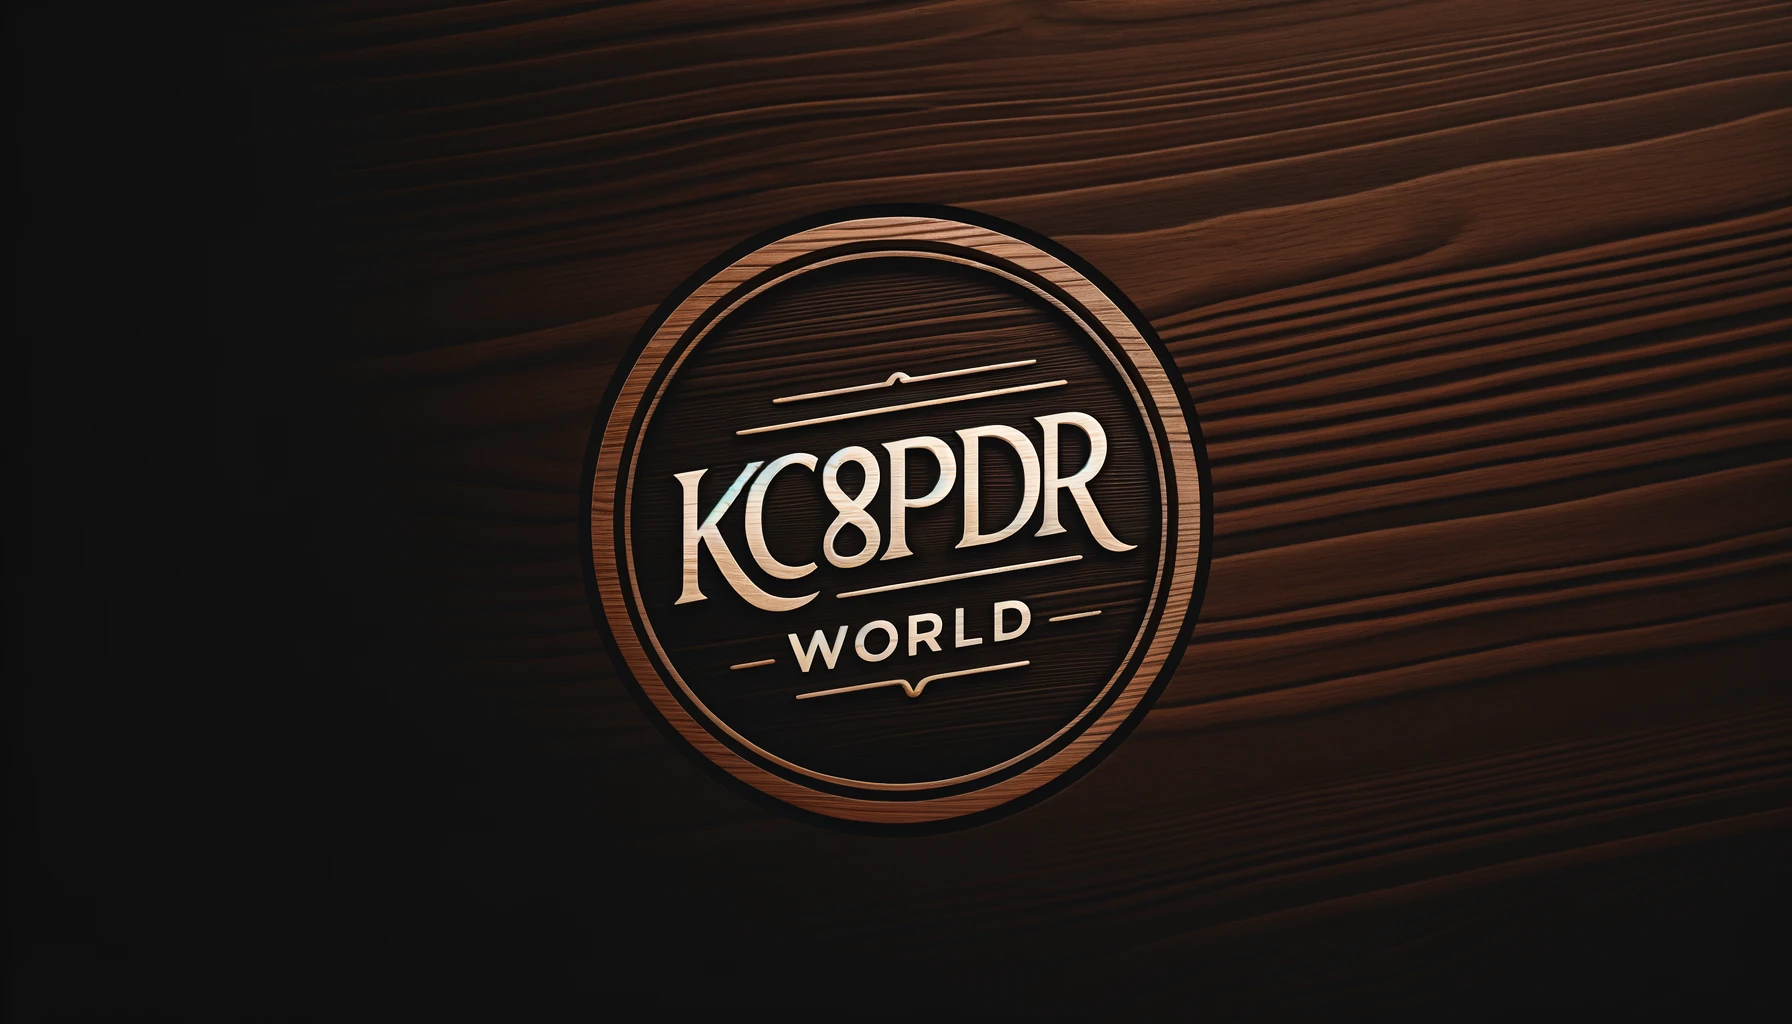 Kc8pdr World